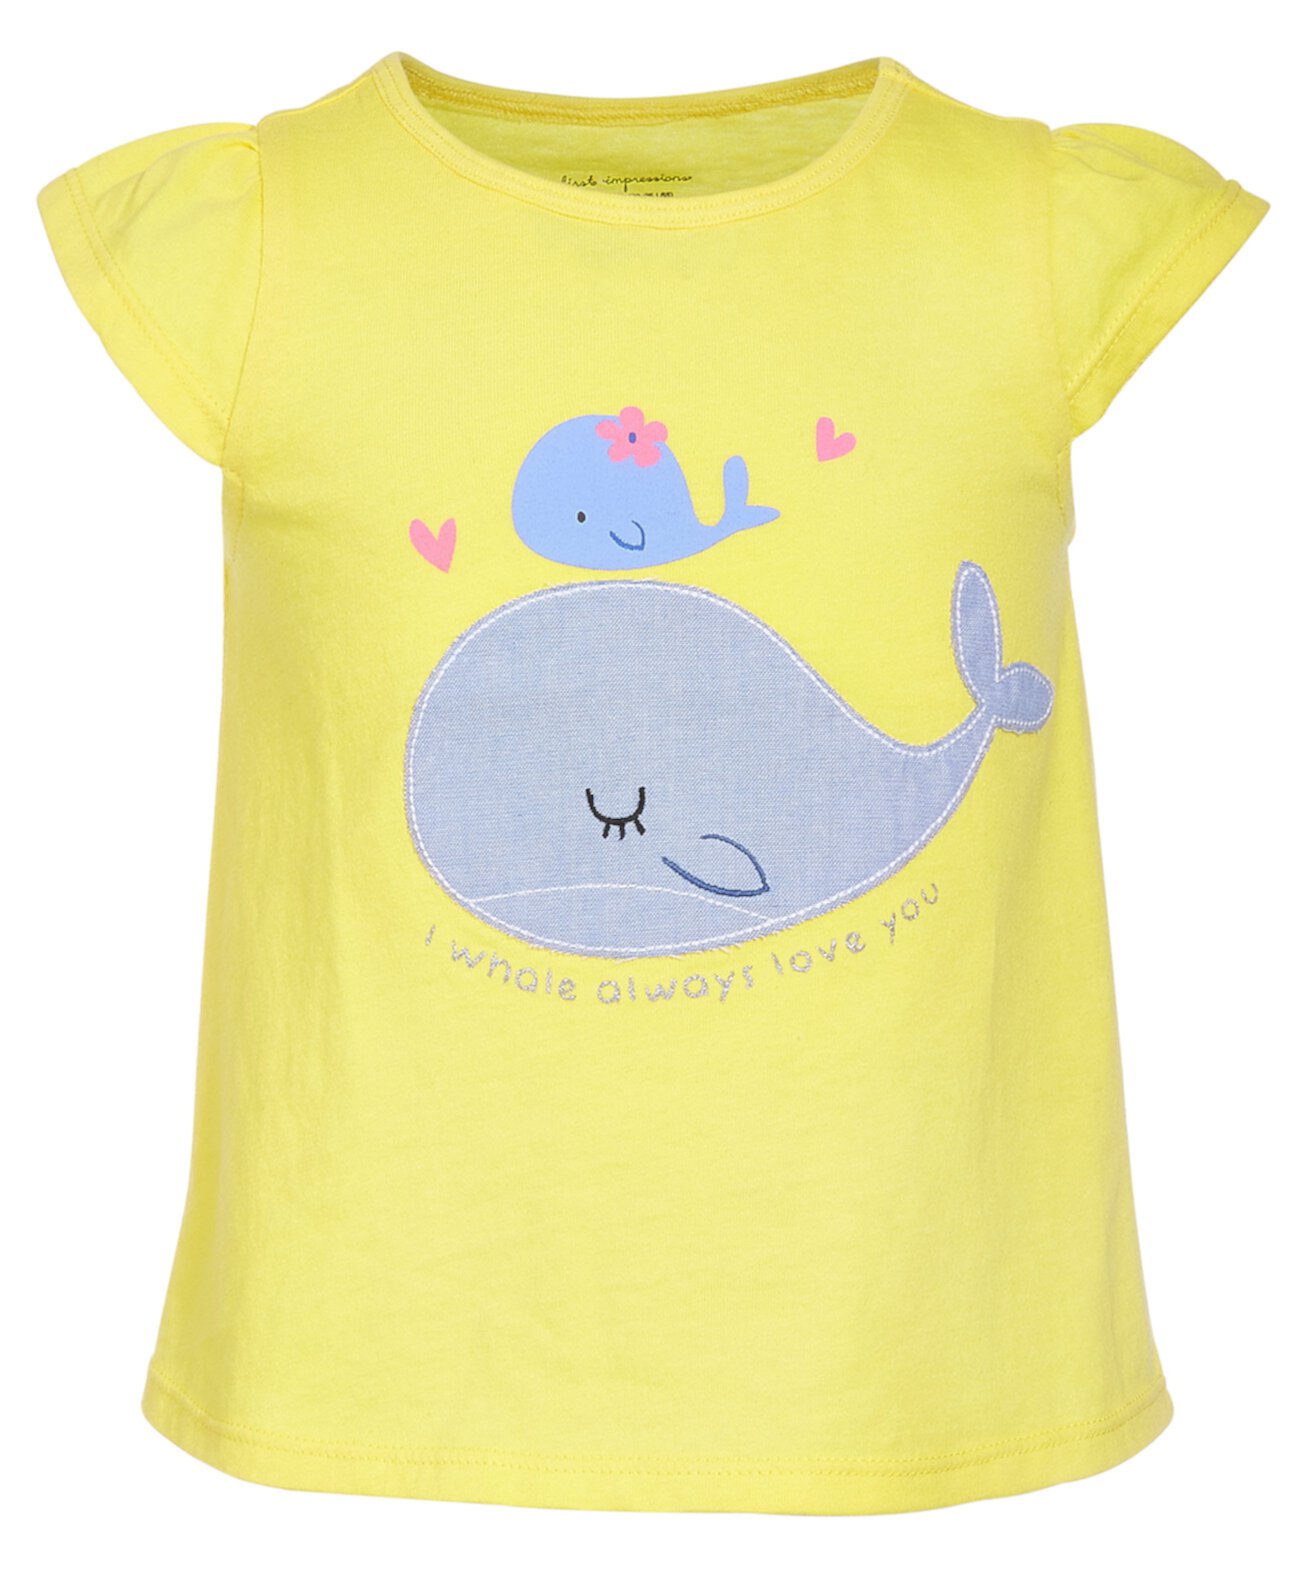 Хлопковый топ Baby Girls Whale Love, созданный для Macy's First Impressions